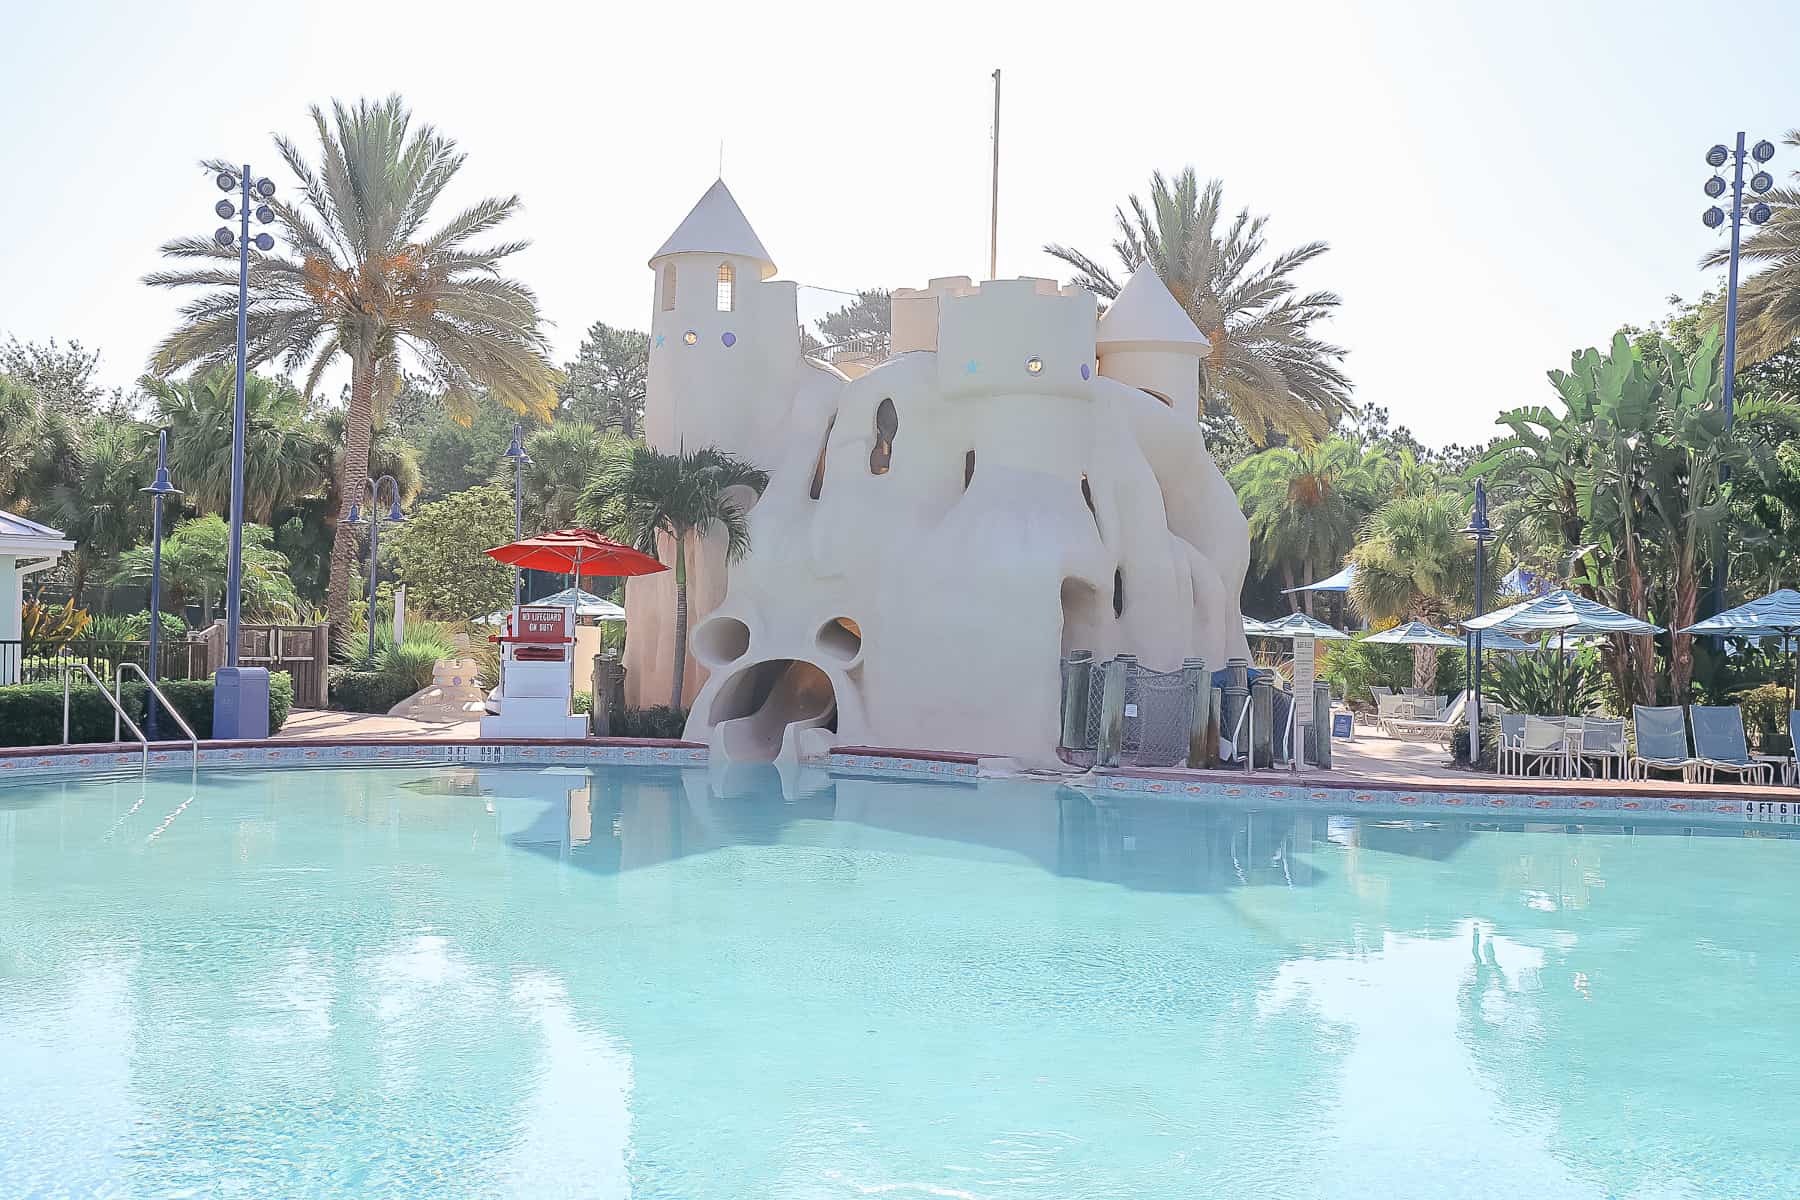 The Sandcastle slide at Disney's Old Key West 